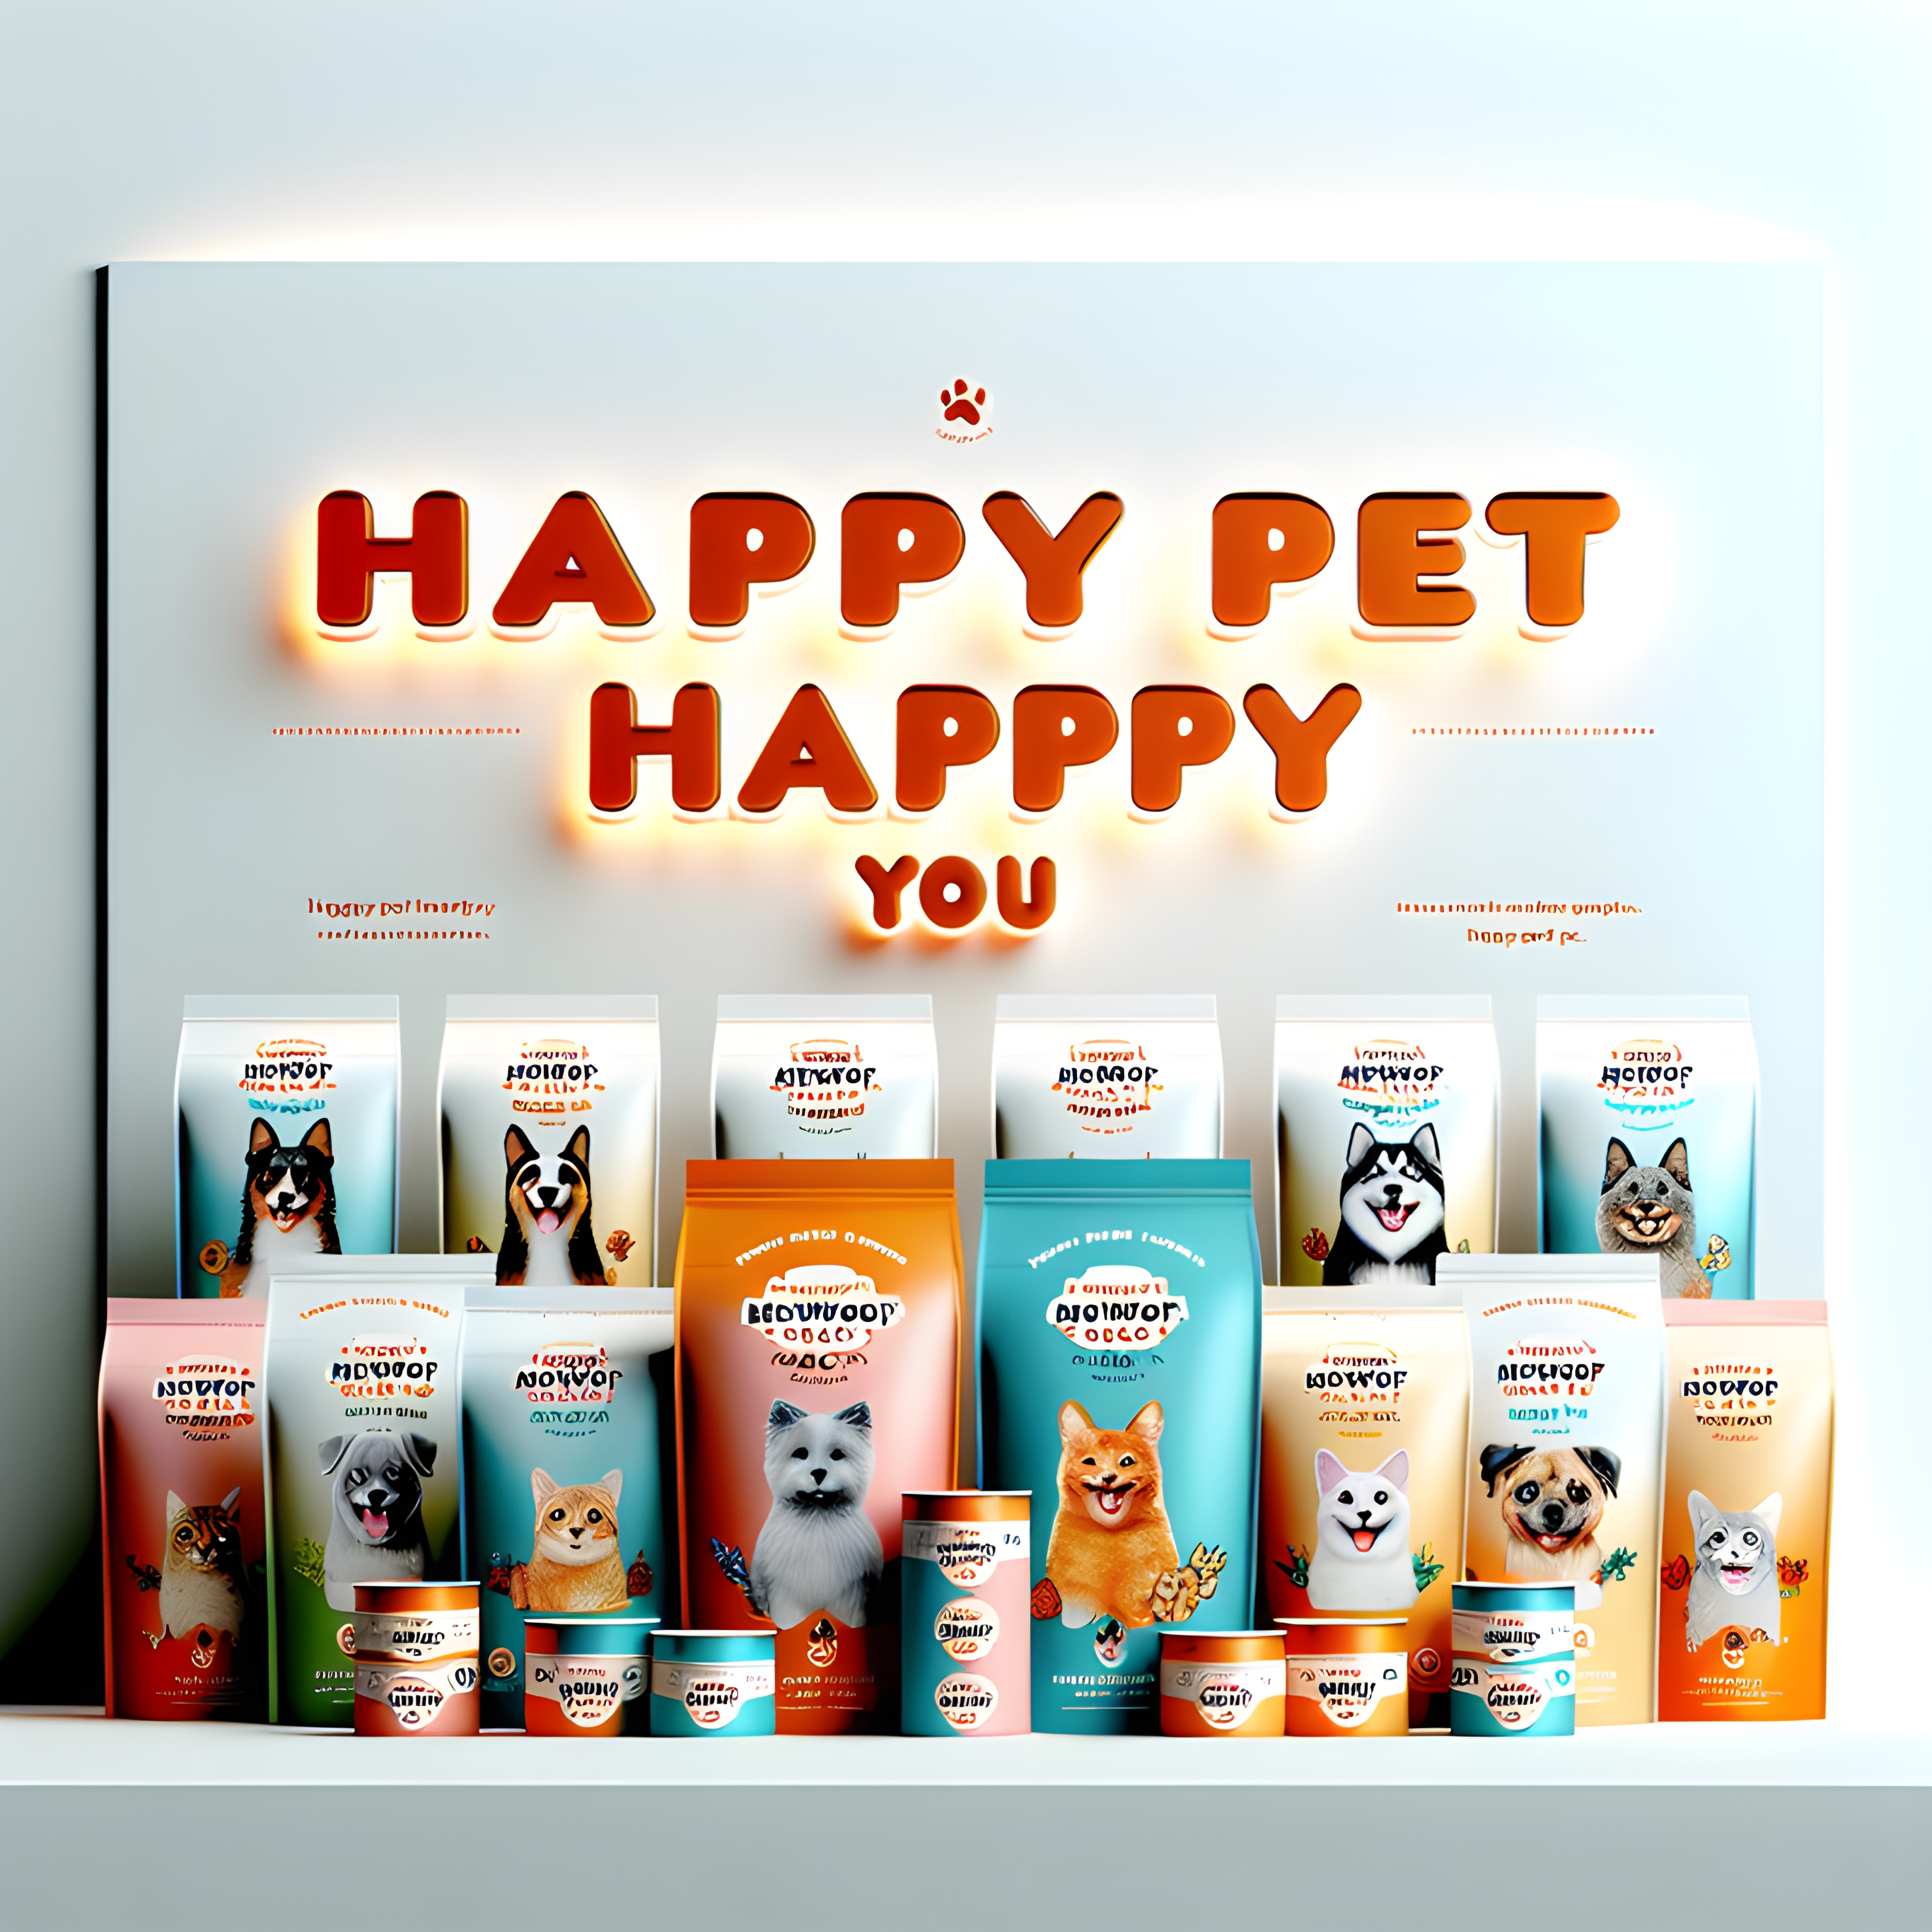 สร้างภาพ โฆษณาที่ดูสะอาดตาและทันสมัยขนาด สำหรับ "MeowWoof Shack" โดยมีคำว่า happy pet happy you และขอบสีส้มรอบๆ ข้อความที่แสดงกลุ่มผลิตภัณฑ์อาหารสัตว์เลี้ยงของพวกเขา ซึ่งได้แก่ คูลเลอร์สุนัขดำ แพ็คเกจแมวขาว และพวกเขาบอกว่าต้องเน้นเอนทิตี เนื้อธรรมชาติน้อยหรือใหญ่ ตัวเลือกทางสุขภาพให้เลือก เช่น ปลา มหาสมุทร มด นา ขนไก่ ไข่ สำหรับสุนัข เนื้อ Shtech สีแดง สีน้ำเงิน สีเขียว สีม่วง สีเหลือง d ที่ว่างตรงกลางโฆษณา เพื่อให้มีที่ว่างสำหรับเขียนบางอย่างข้างใต้บนพื้นหลังสีขาว